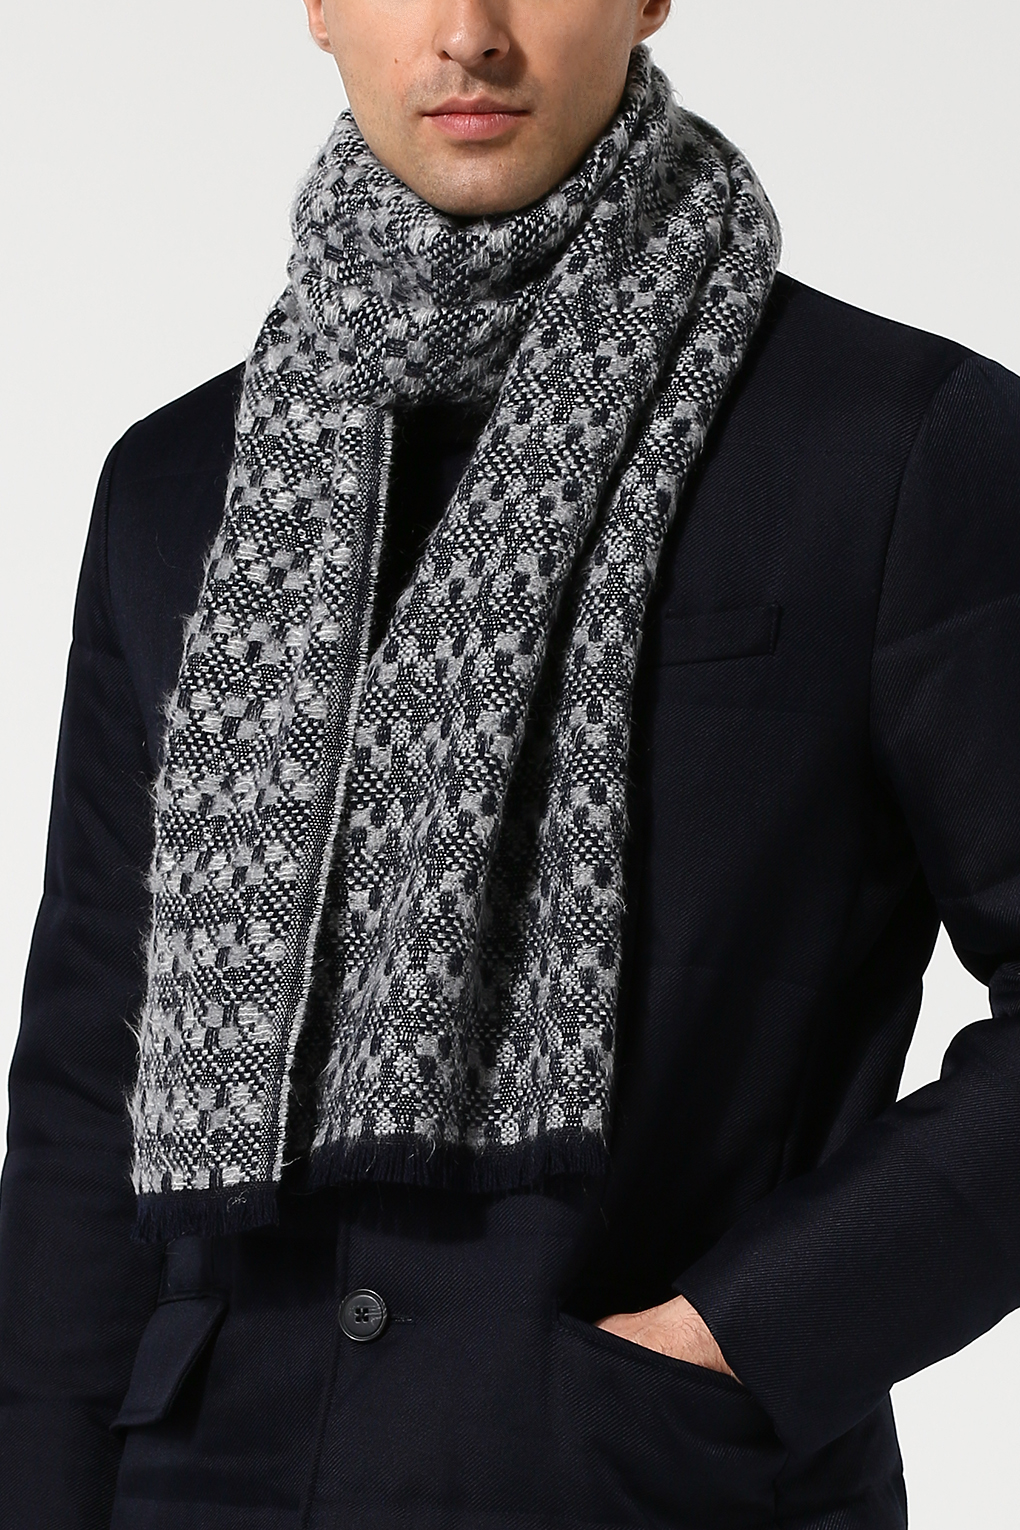 Как модно завязать шарф на шее в 2019 году (с фото)